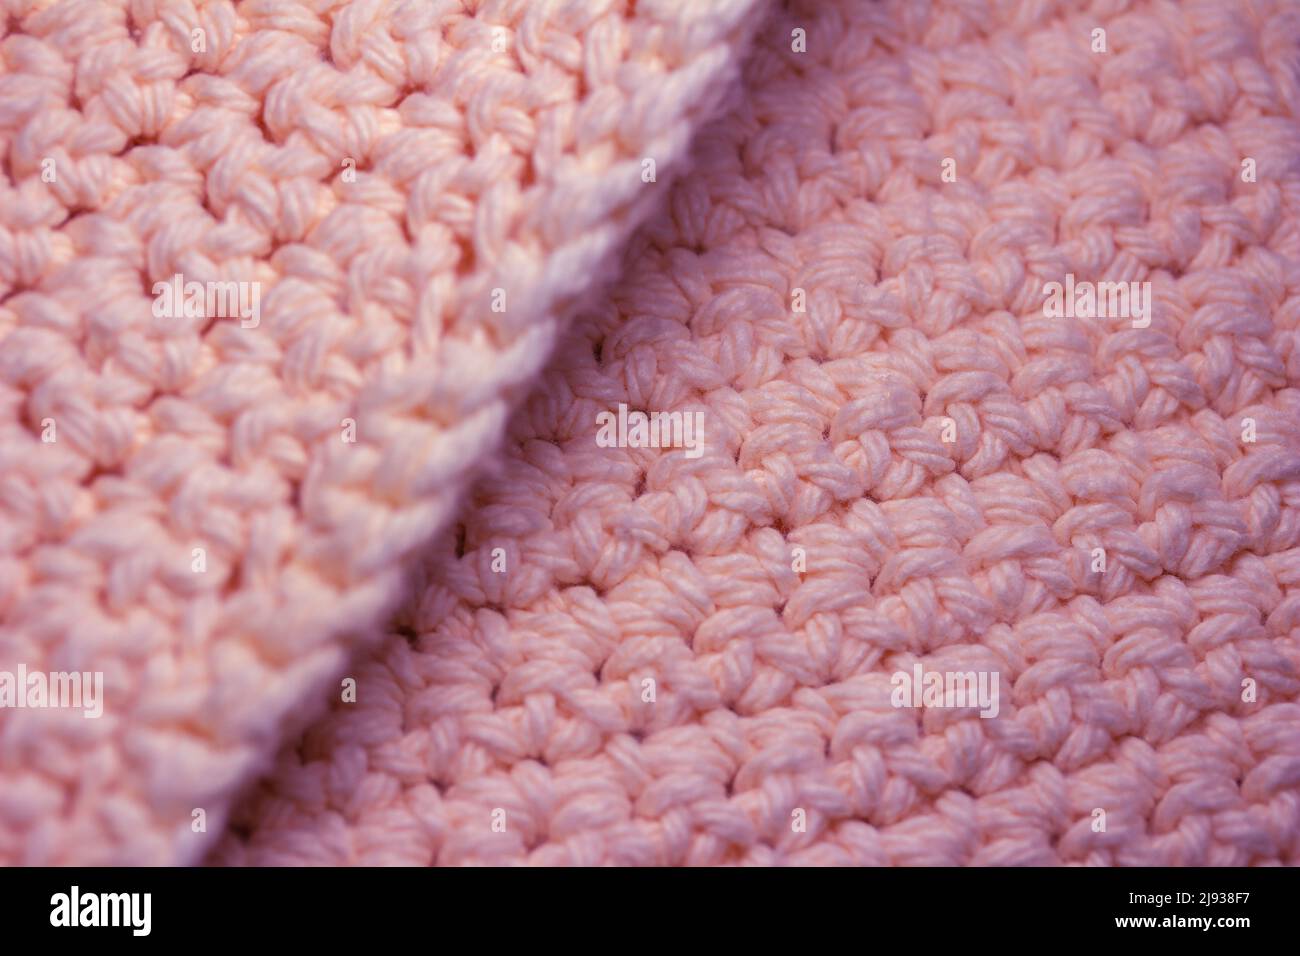 Foto Stock Hilos para tejer crochet y ganchillo con aguja sobre fondo  blanco aislado. Vista de frente